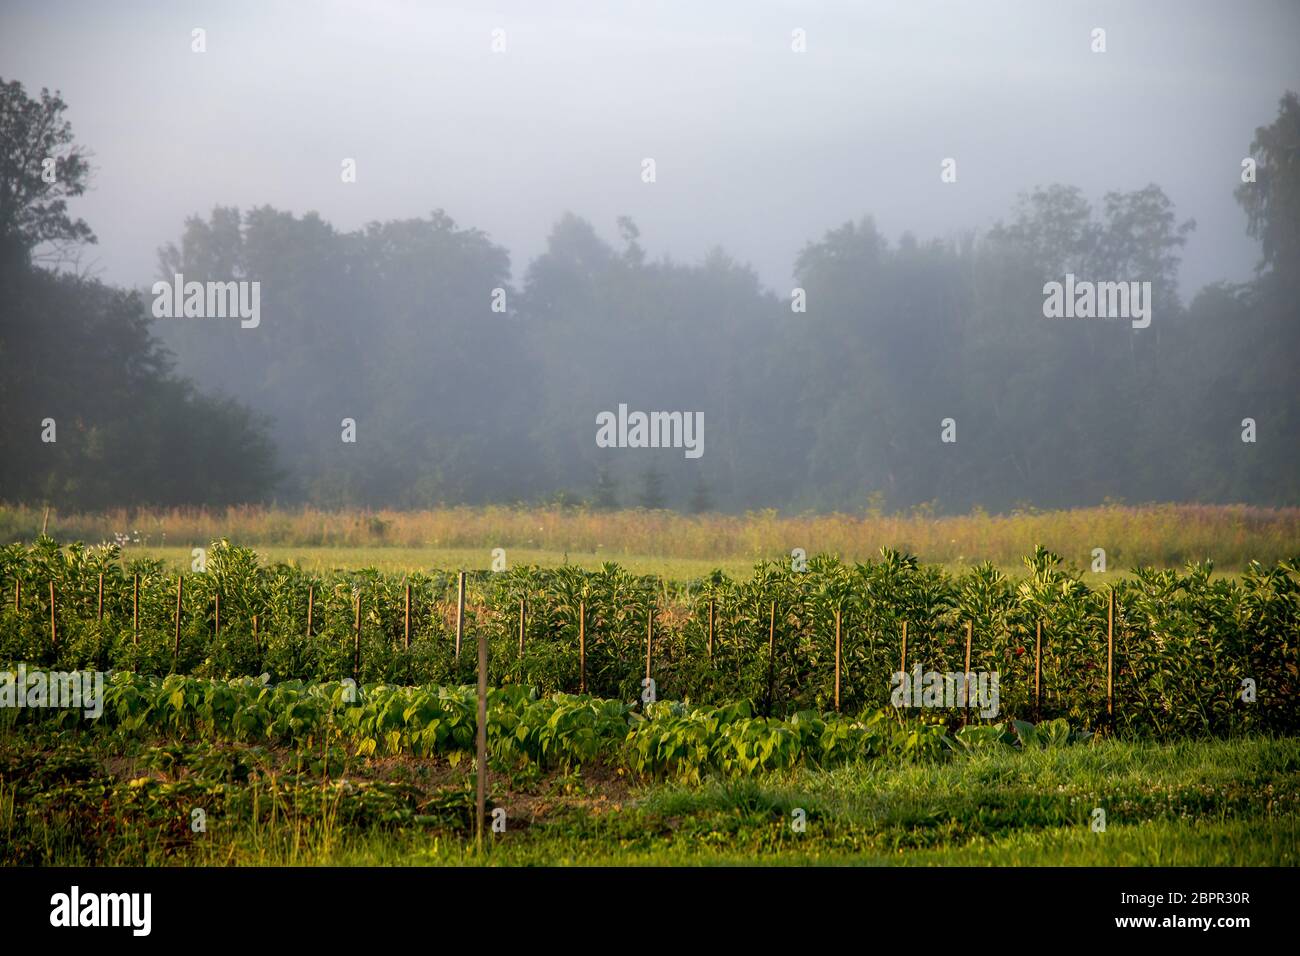 Paysage letton avec brouillard au-dessus du jardin. Paysage rural classique en Lettonie. La brume est de minuscules gouttelettes d'eau en suspension dans l'atmosphère à ou près de l'e Banque D'Images